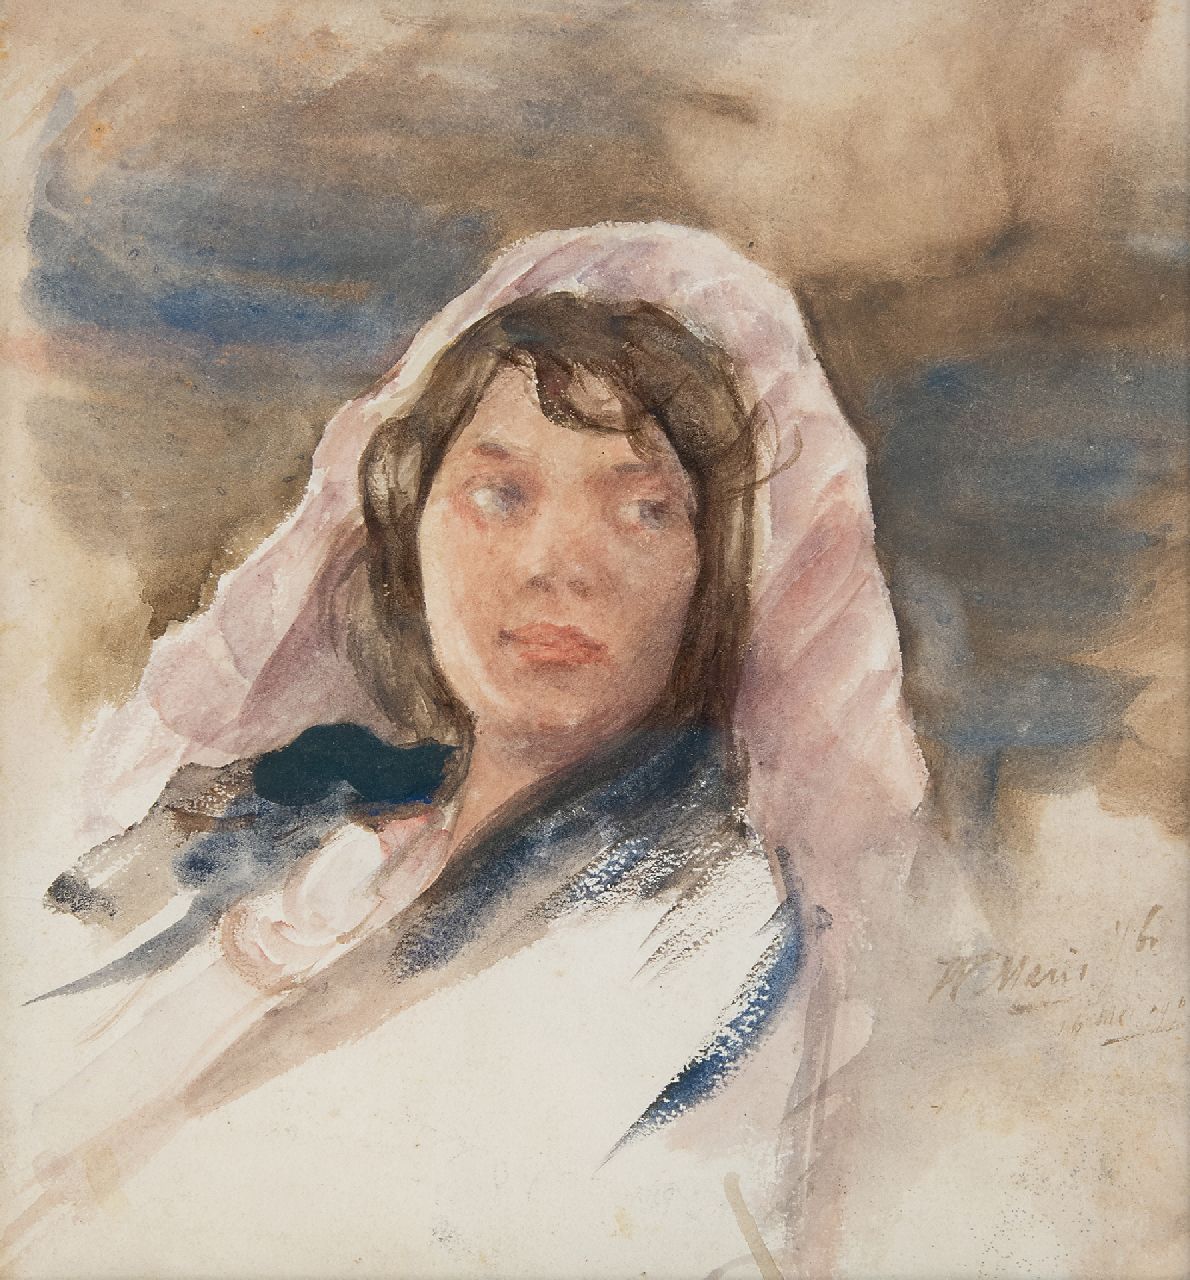 Maris W.M.  | 'Willem' Matthijs Maris | Aquarellen en tekeningen te koop aangeboden | Jonge vrouw met cape, aquarel op papier 24,2 x 22,1 cm, gesigneerd rechtsonder en gedateerd 16 mei 1903